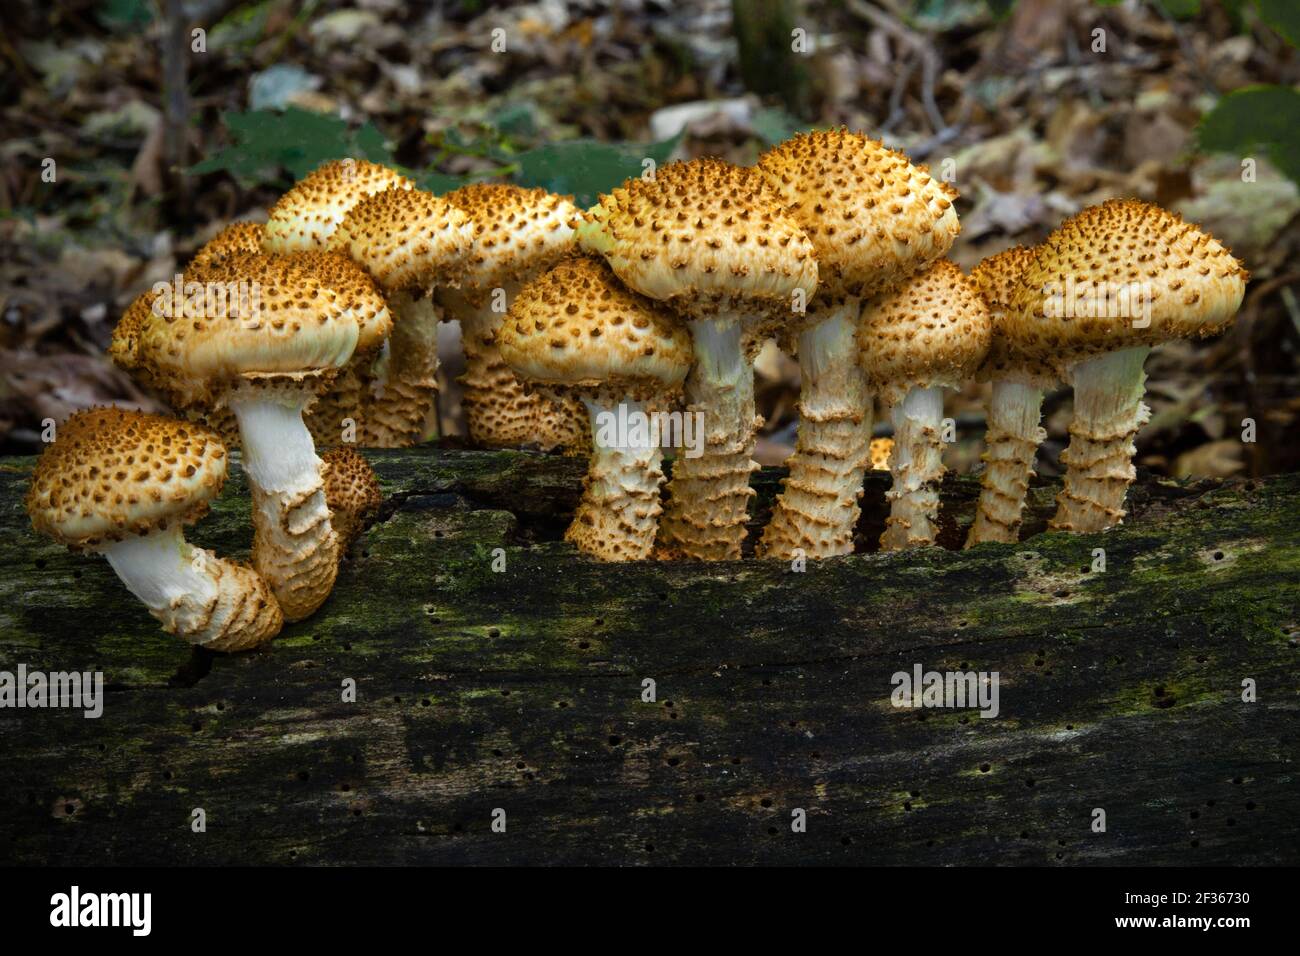 Schuppige Pholiota ein häufiger saprotropher Pilz, der sich von geschwächten oder toten Holz ernährt. Es wird berichtet, dass es giftig für den menschlichen Verzehr ist. Stockfoto